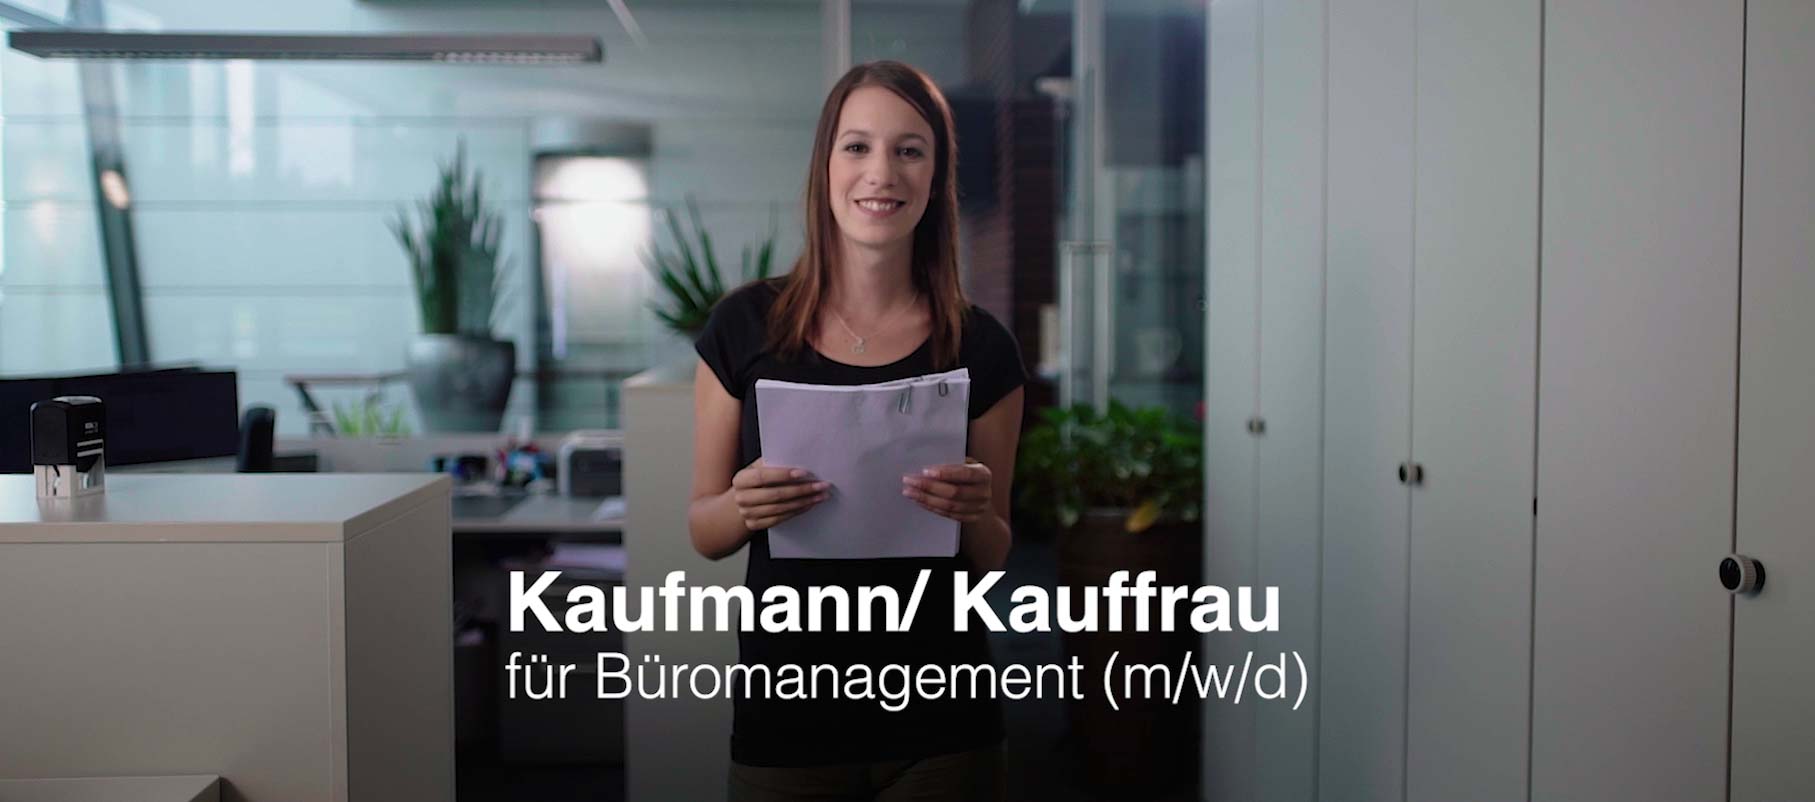 Junge Dame, lächelnd mit Akte in den Händen im Vordergrnd. Büro im Hintergrund. Aufschrift: "Kaufmann/ Kauffrau für Büromanagement (m/w/d)".